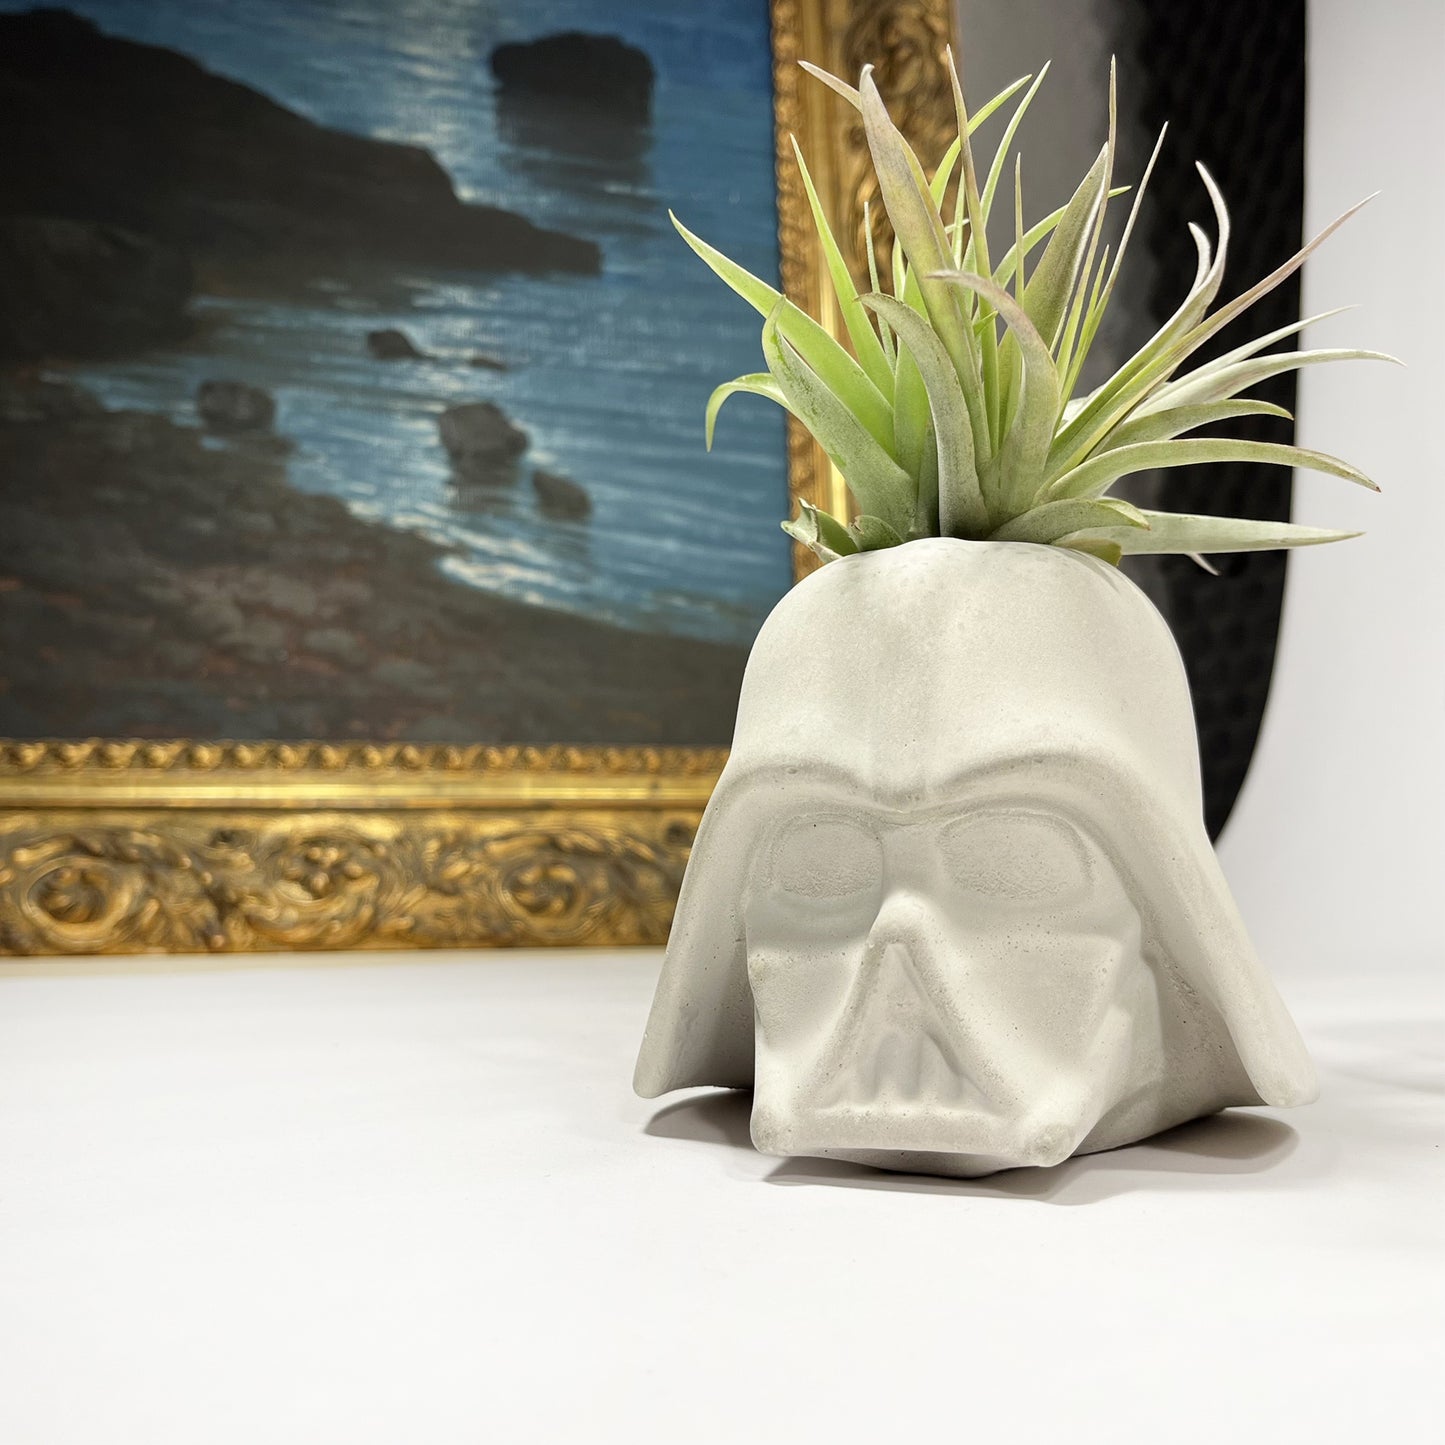 Lord Vader Star Wars vase/pen holder 